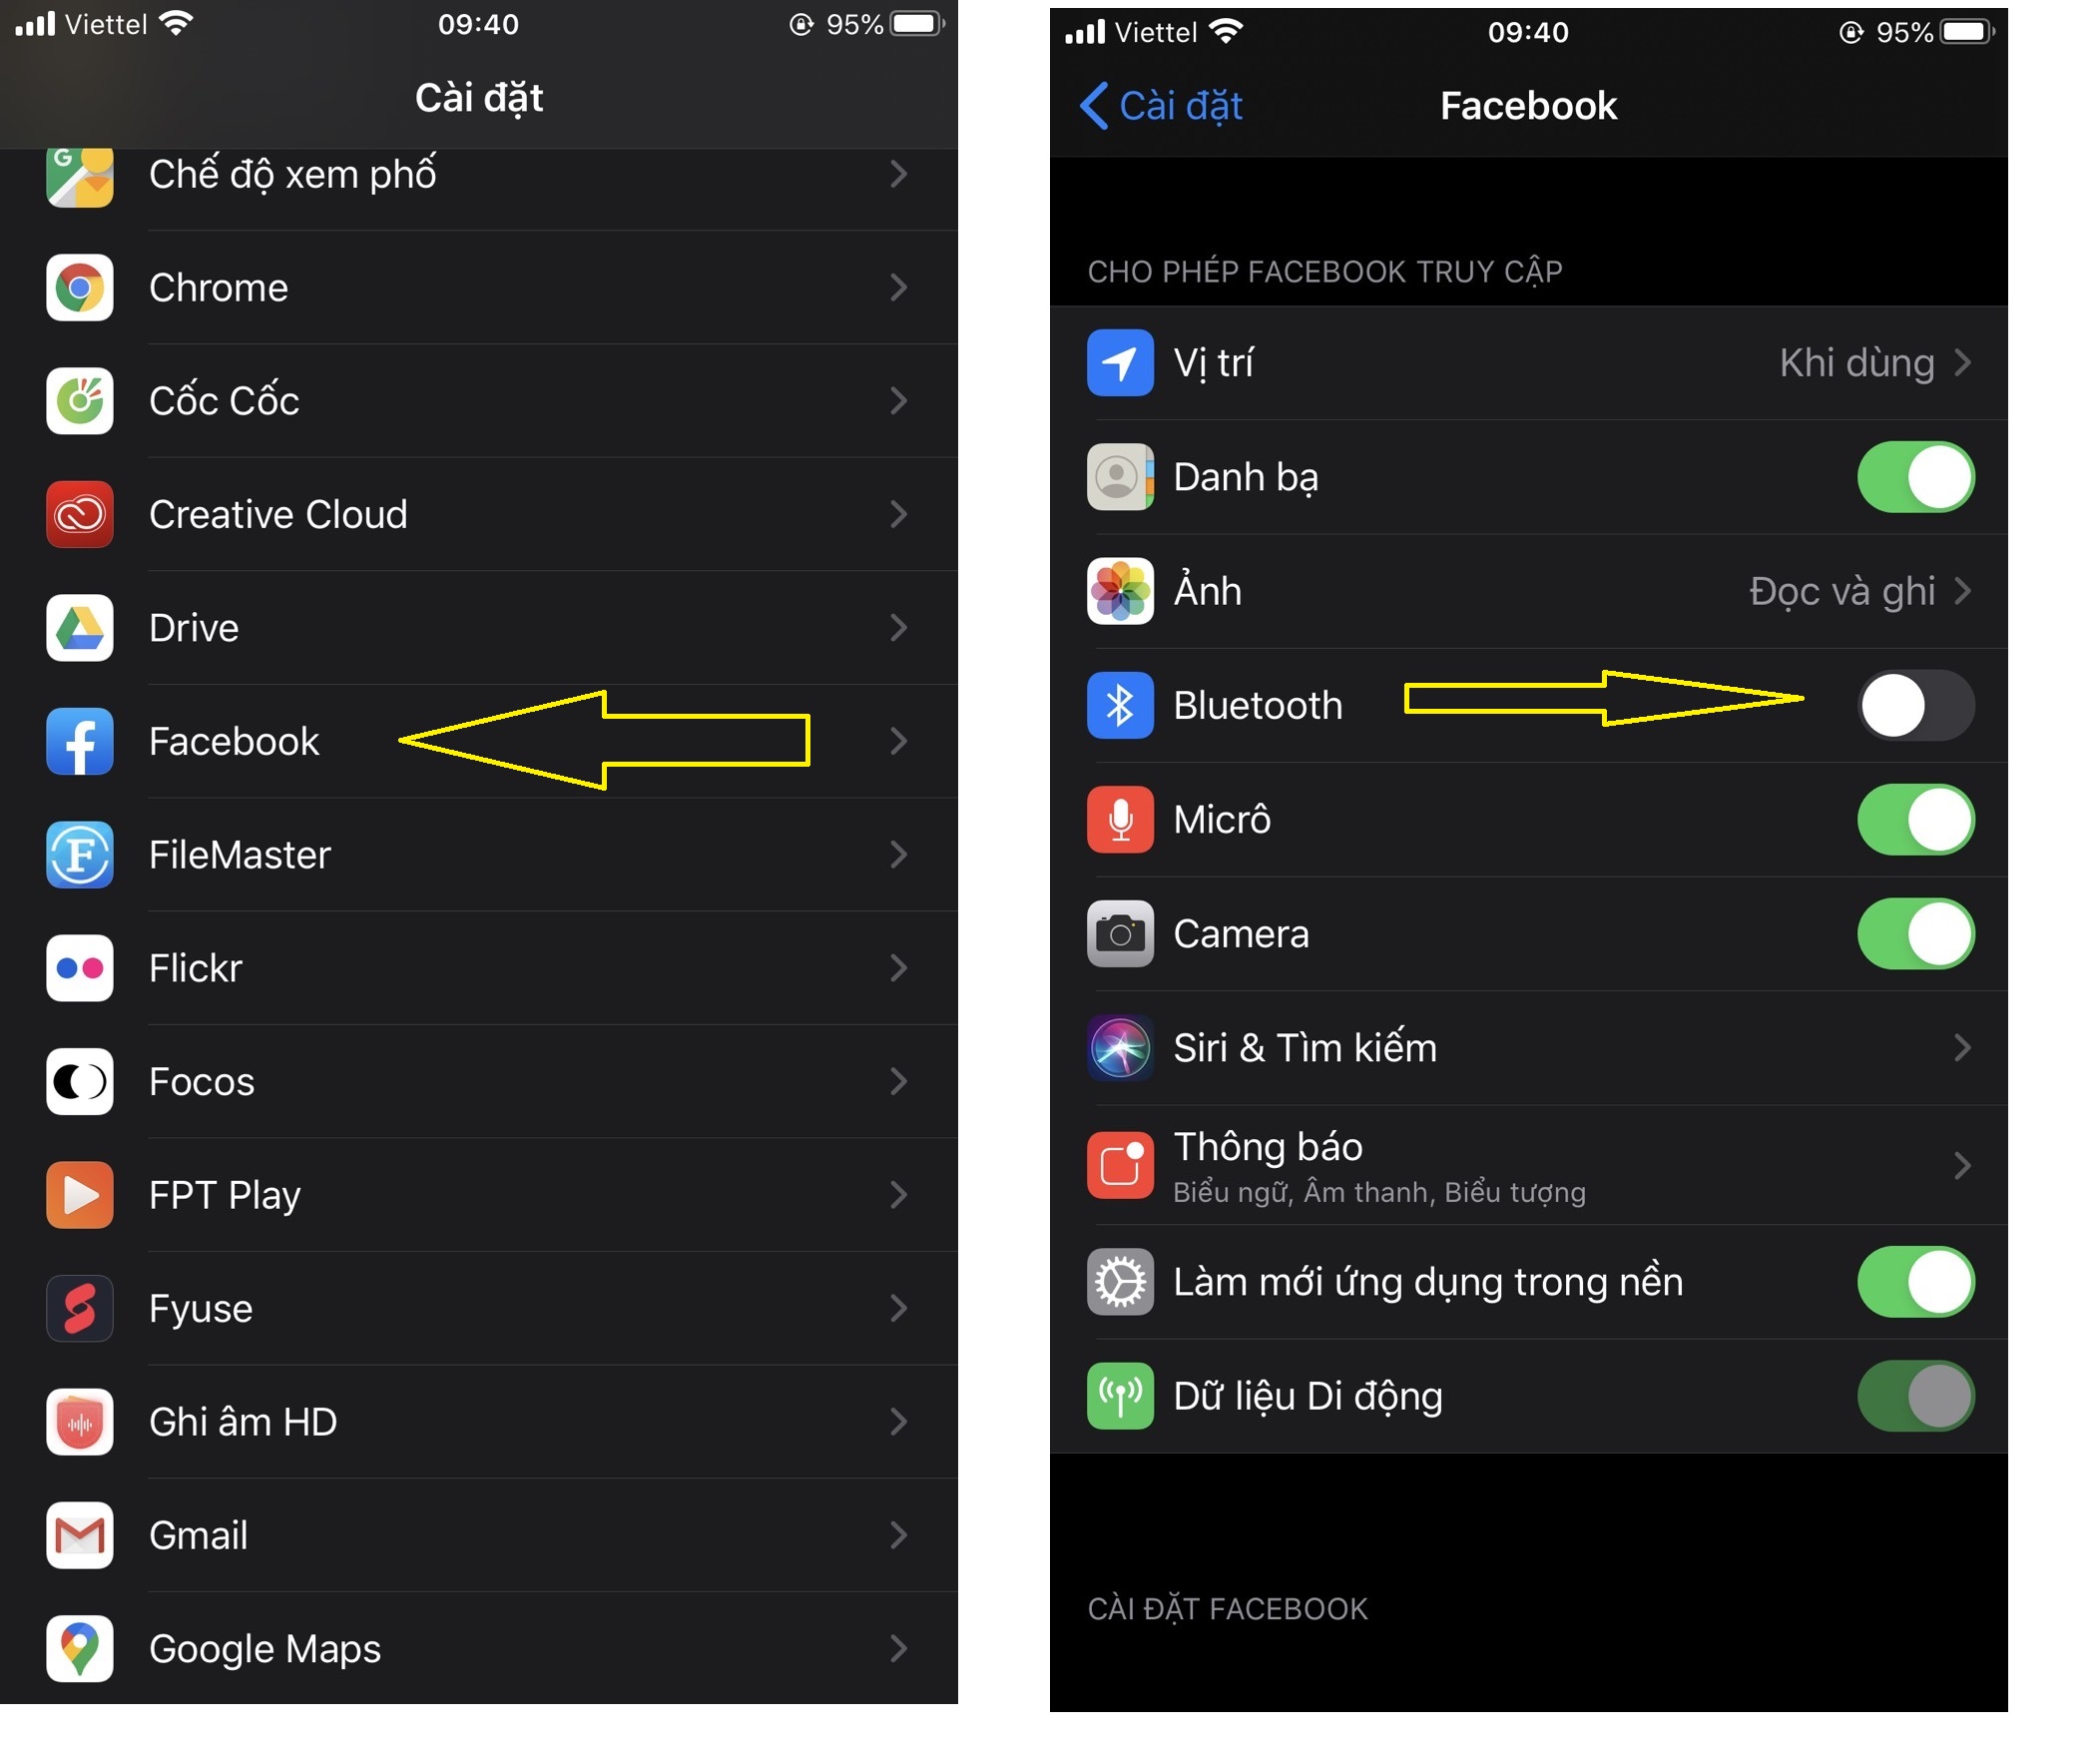 Hướng dẫn fix nóng máy khi dùng facebook trên iOS 13.3.1 mới nhất trên iPhone Vforum.vn-552401-vforum